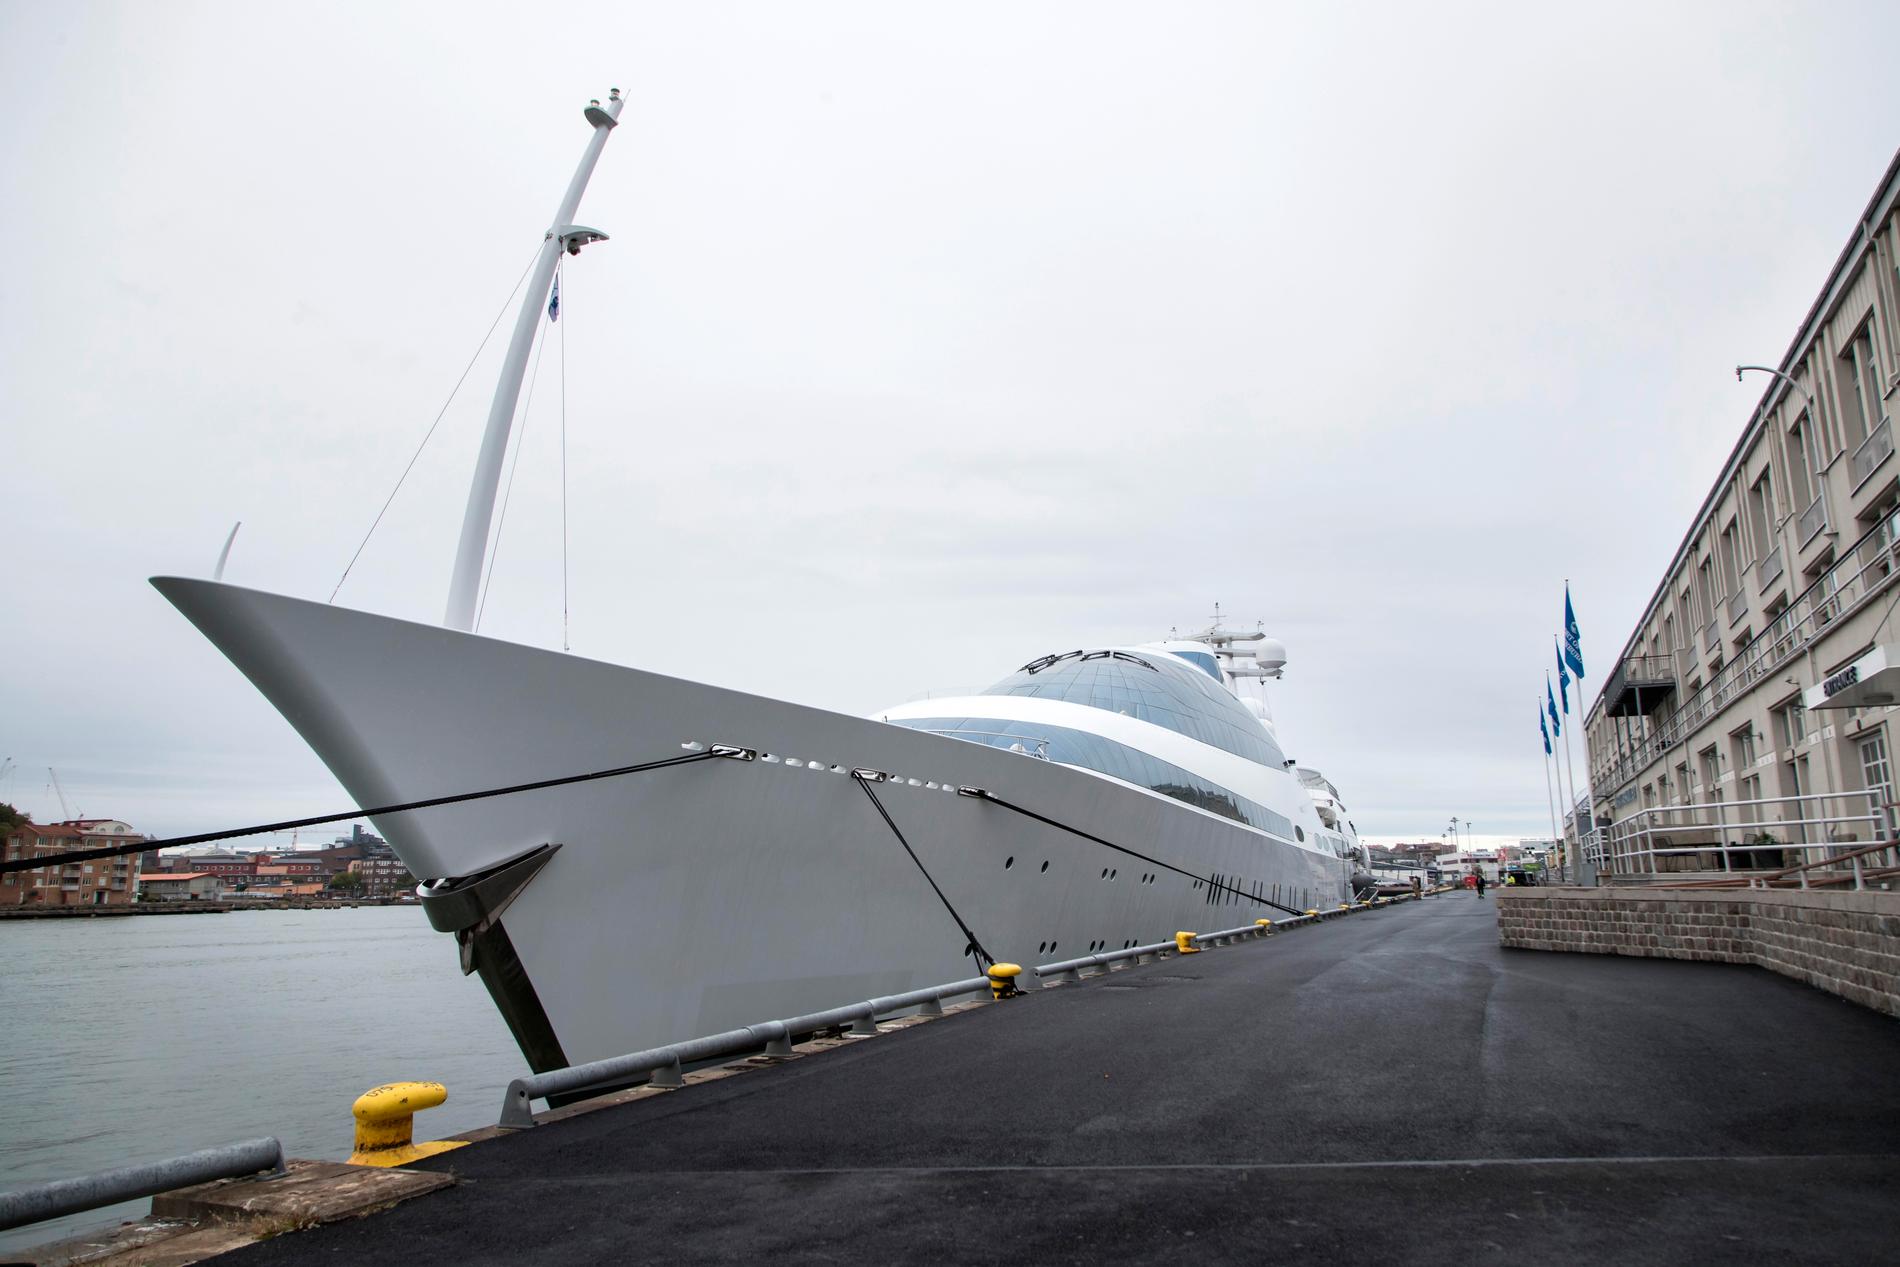 YAS byggdes till en början som ett nederländskt örlogsfartyg men ett varv i Abu Dhabi byggde om den till en lyxyacht. Nu på besök vid Amerikaskjulet i Göteborgs hamn.